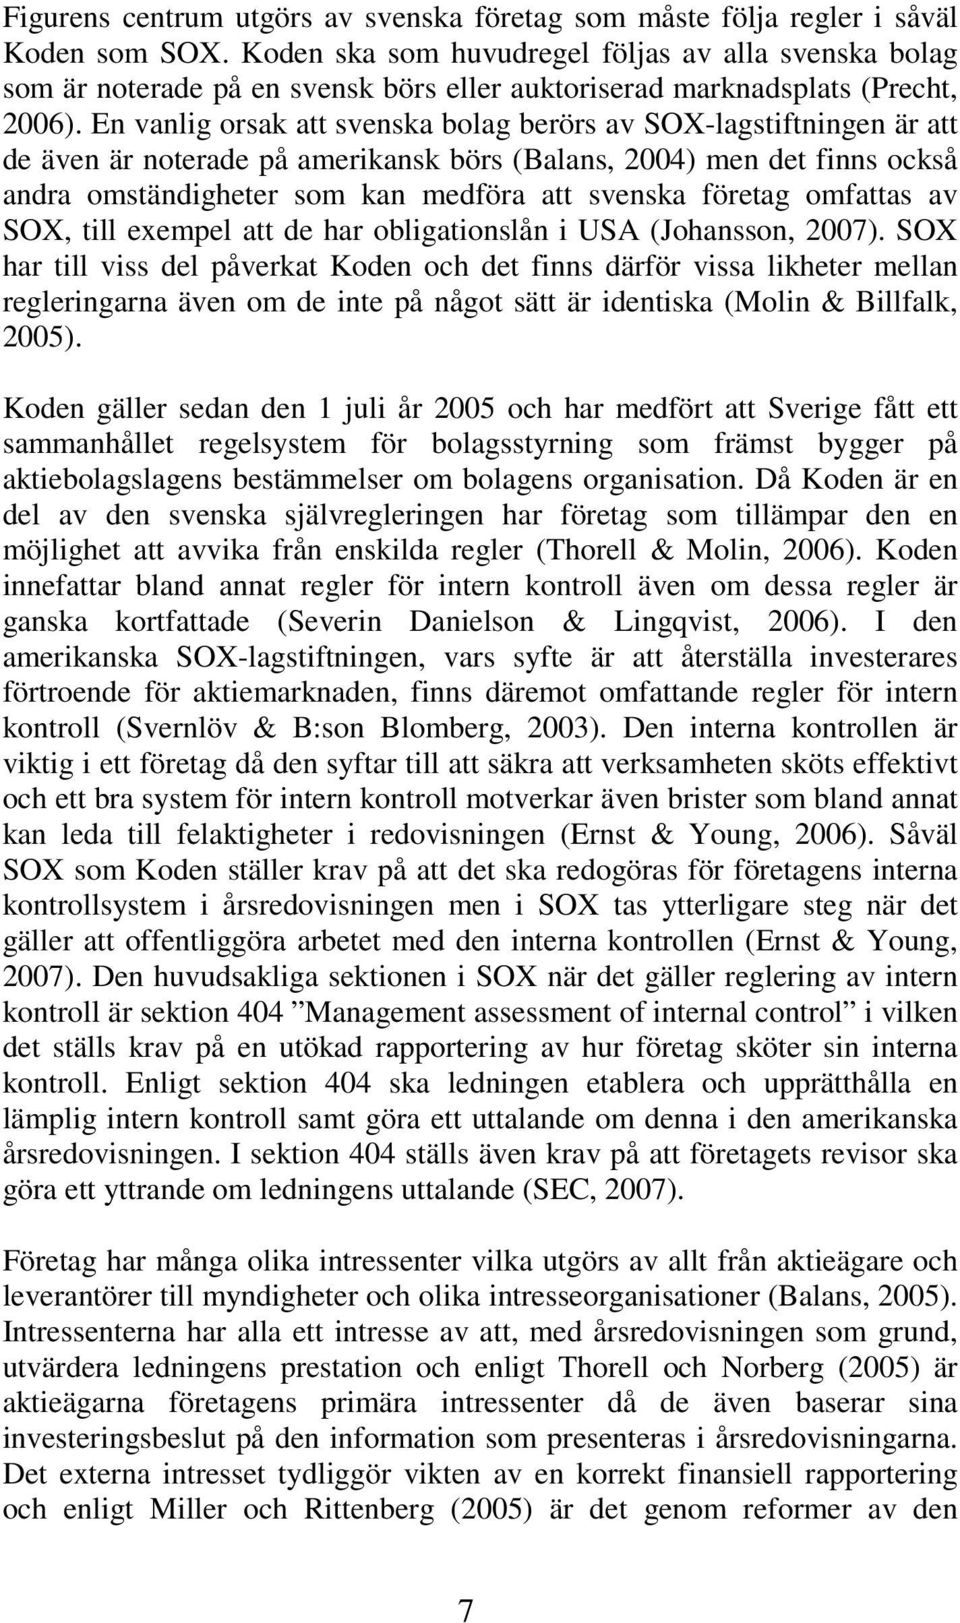 En vanlig orsak att svenska bolag berörs av SOX-lagstiftningen är att de även är noterade på amerikansk börs (Balans, 2004) men det finns också andra omständigheter som kan medföra att svenska